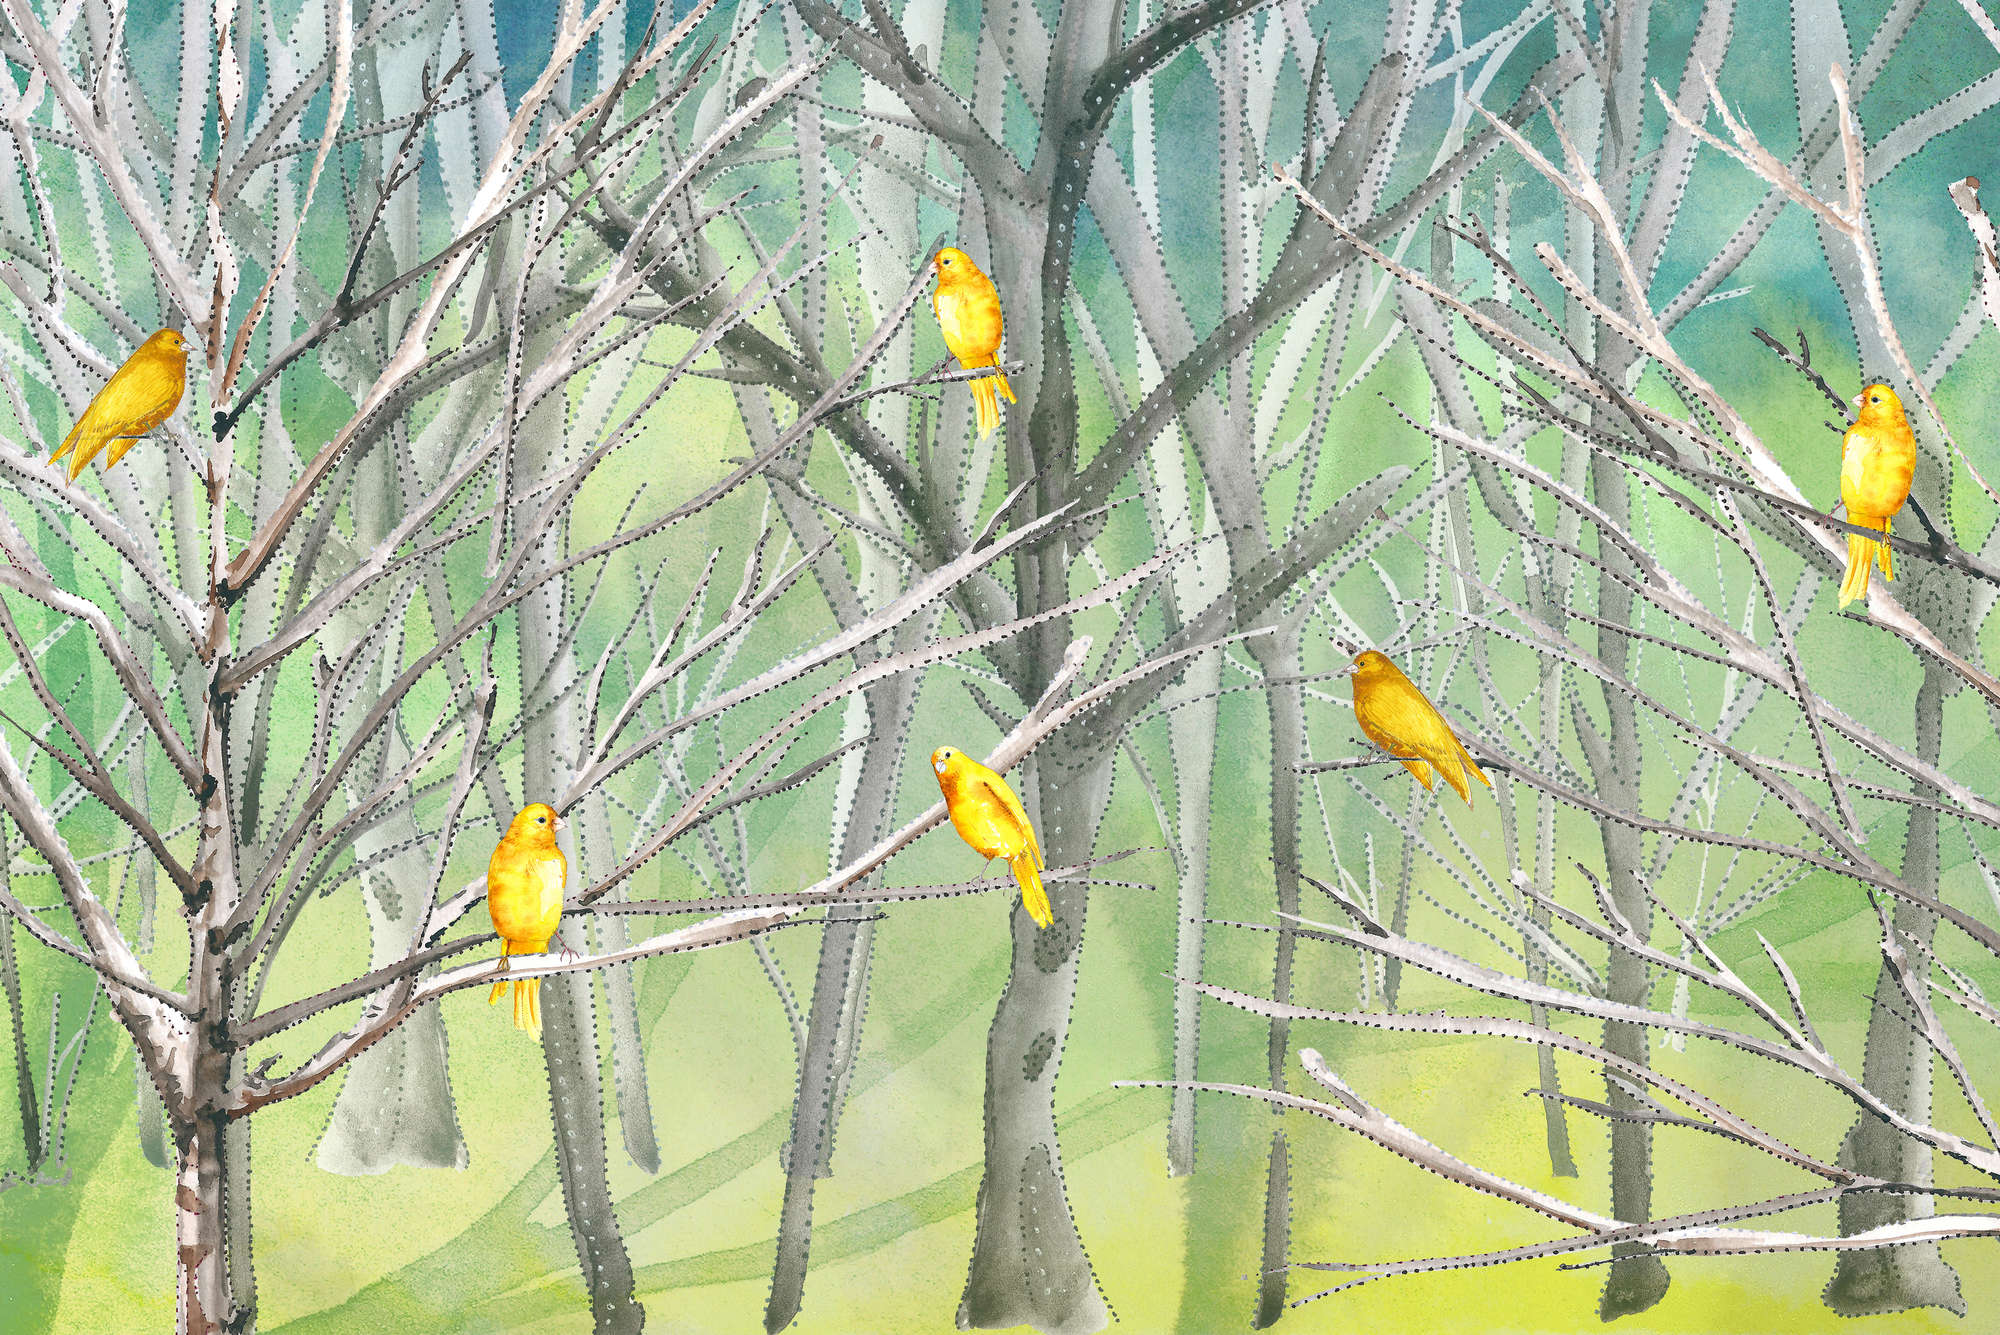             Wald Fototapete mit Vögeln in Blau und Gelb auf Matt Glattvlies
        